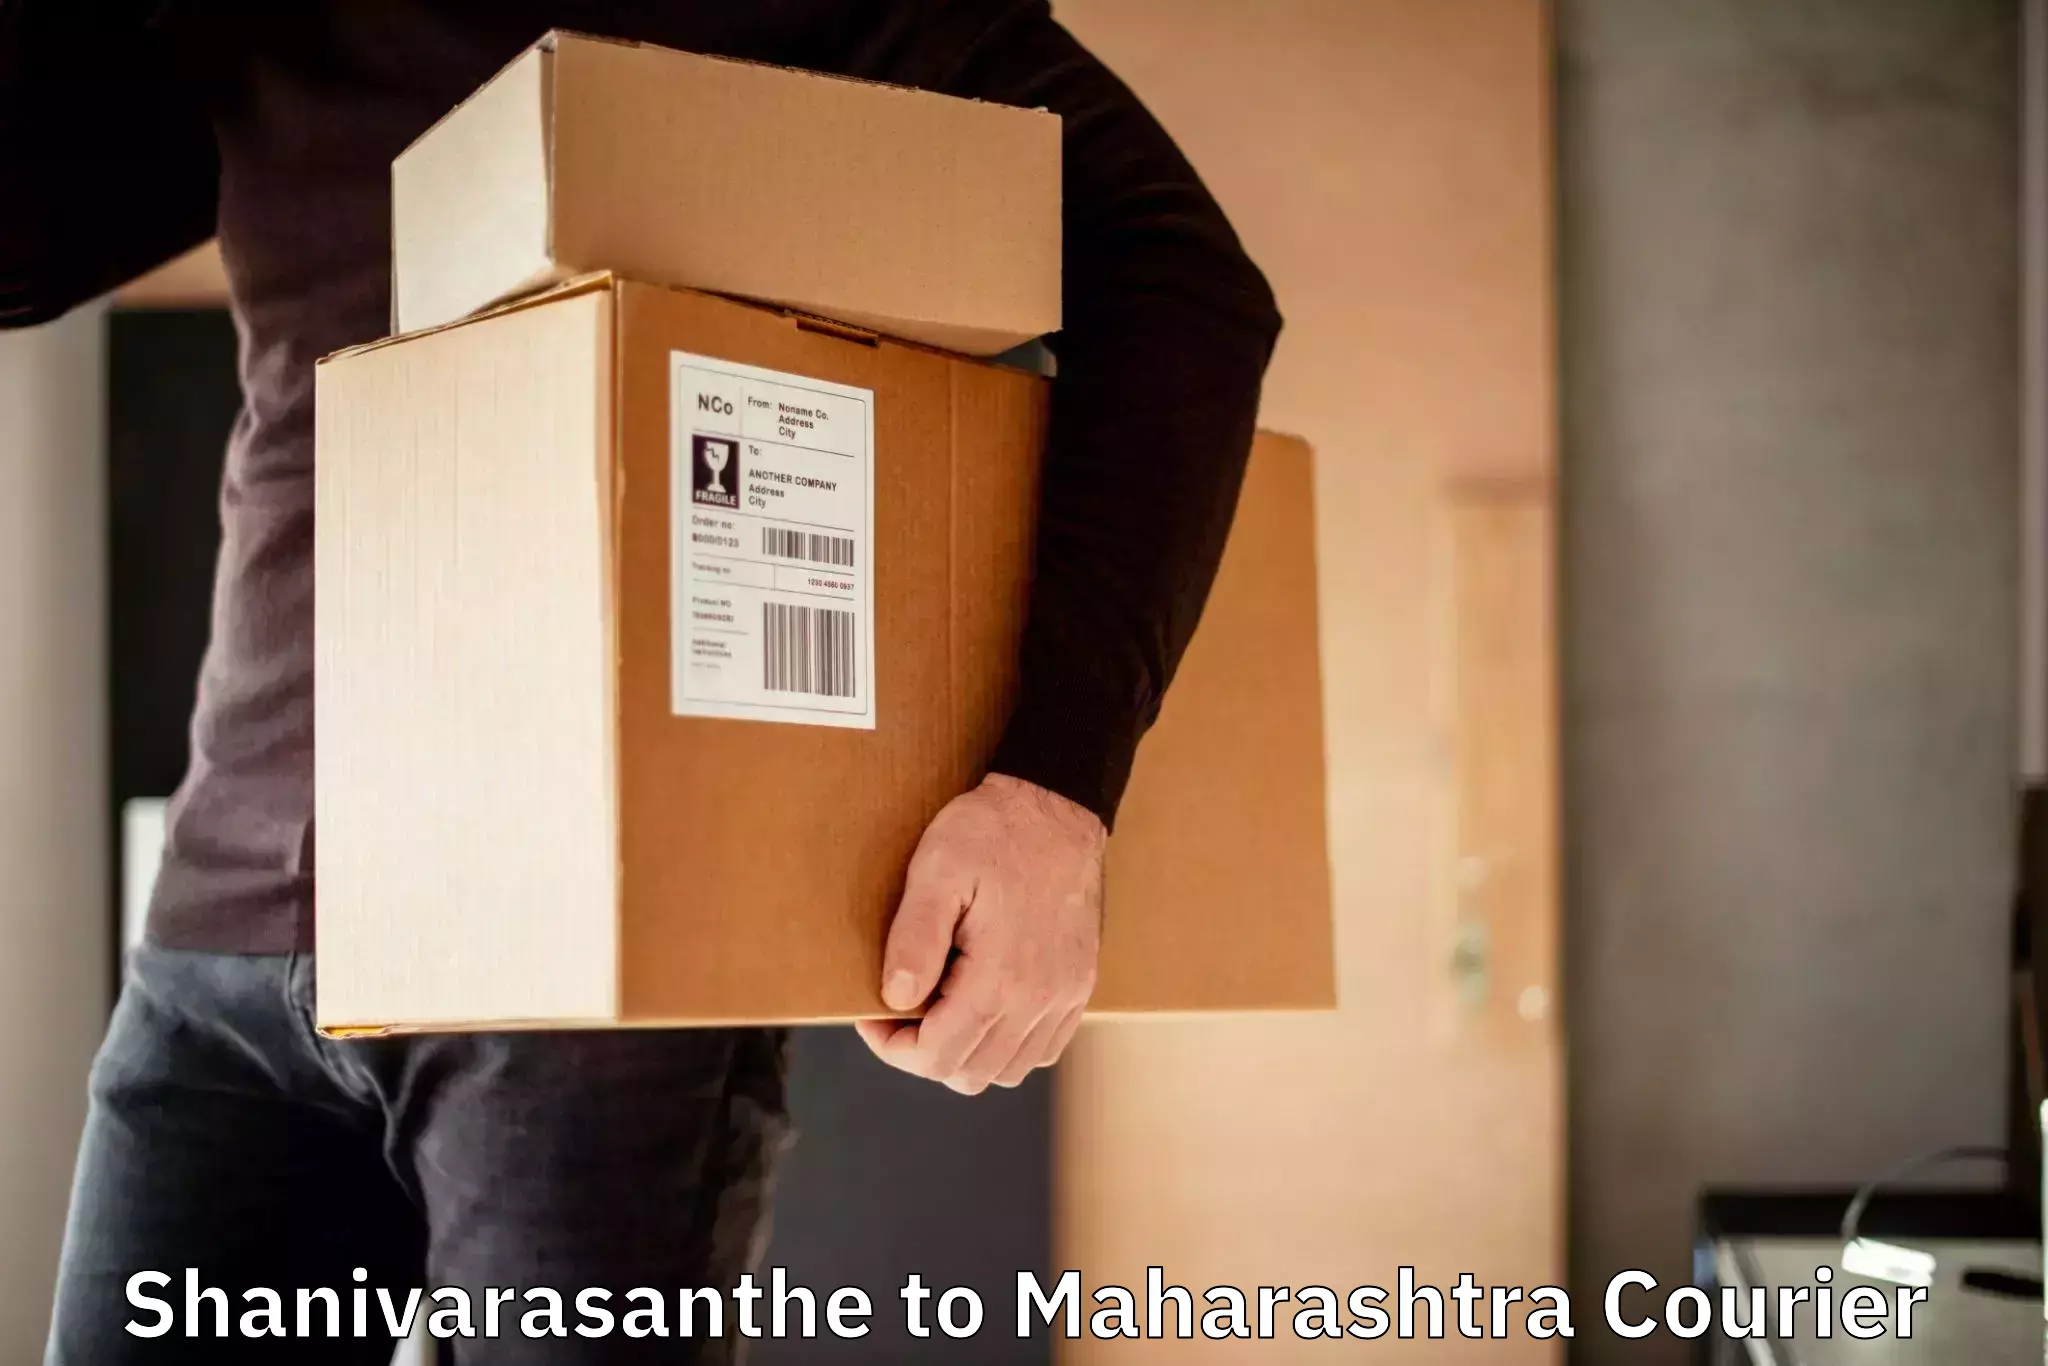 On-call courier service Shanivarasanthe to Dr Babasaheb Ambedkar Marathwada University Aurangabad